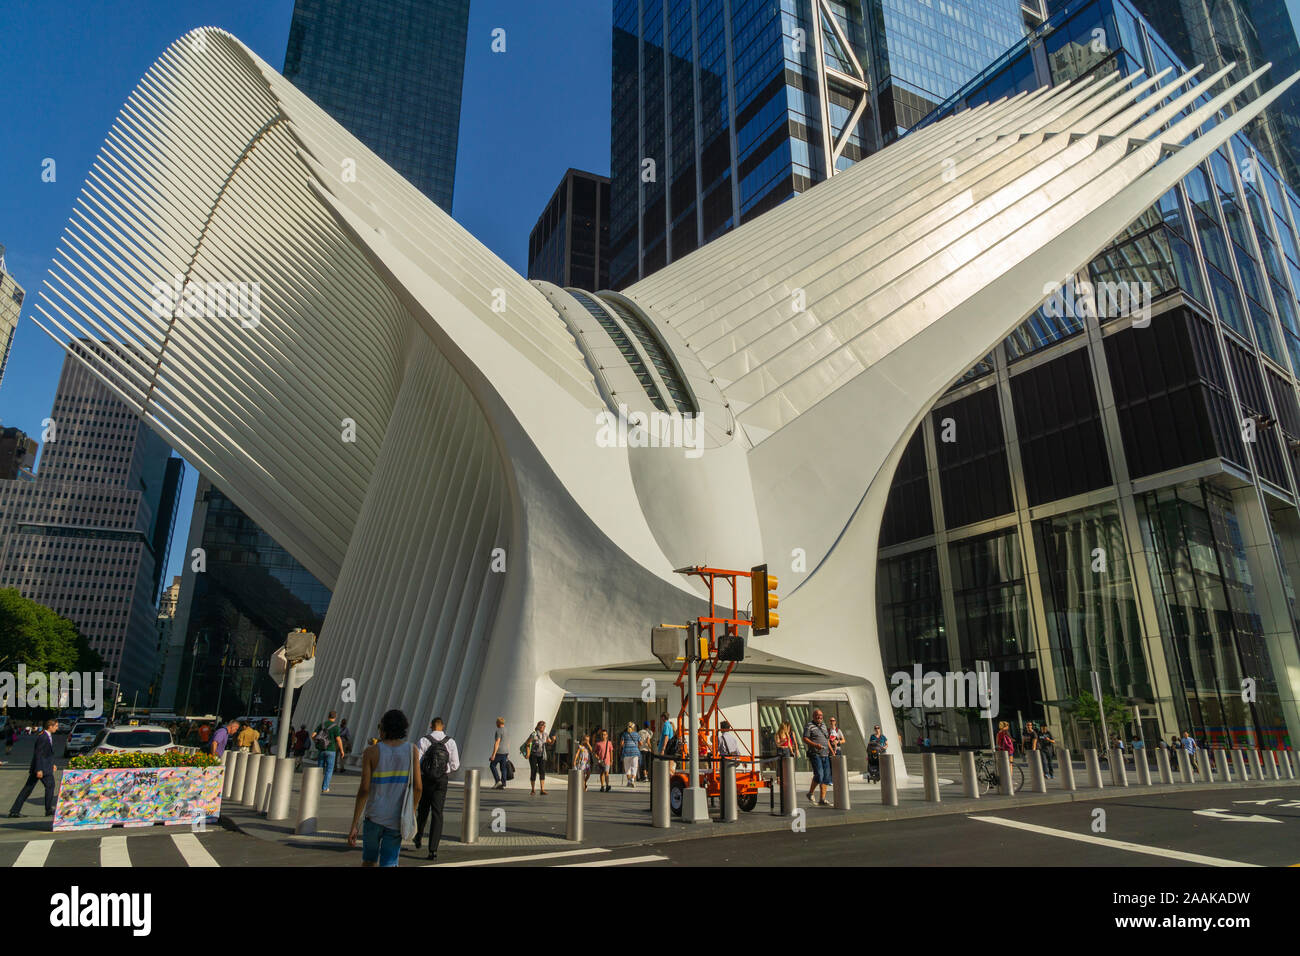 New York, USA - 20 août 2018 : vue extérieure du World Trade Center Transportation Hub ou Oculus conçu par l'architecte Santiago Calatrava Banque D'Images